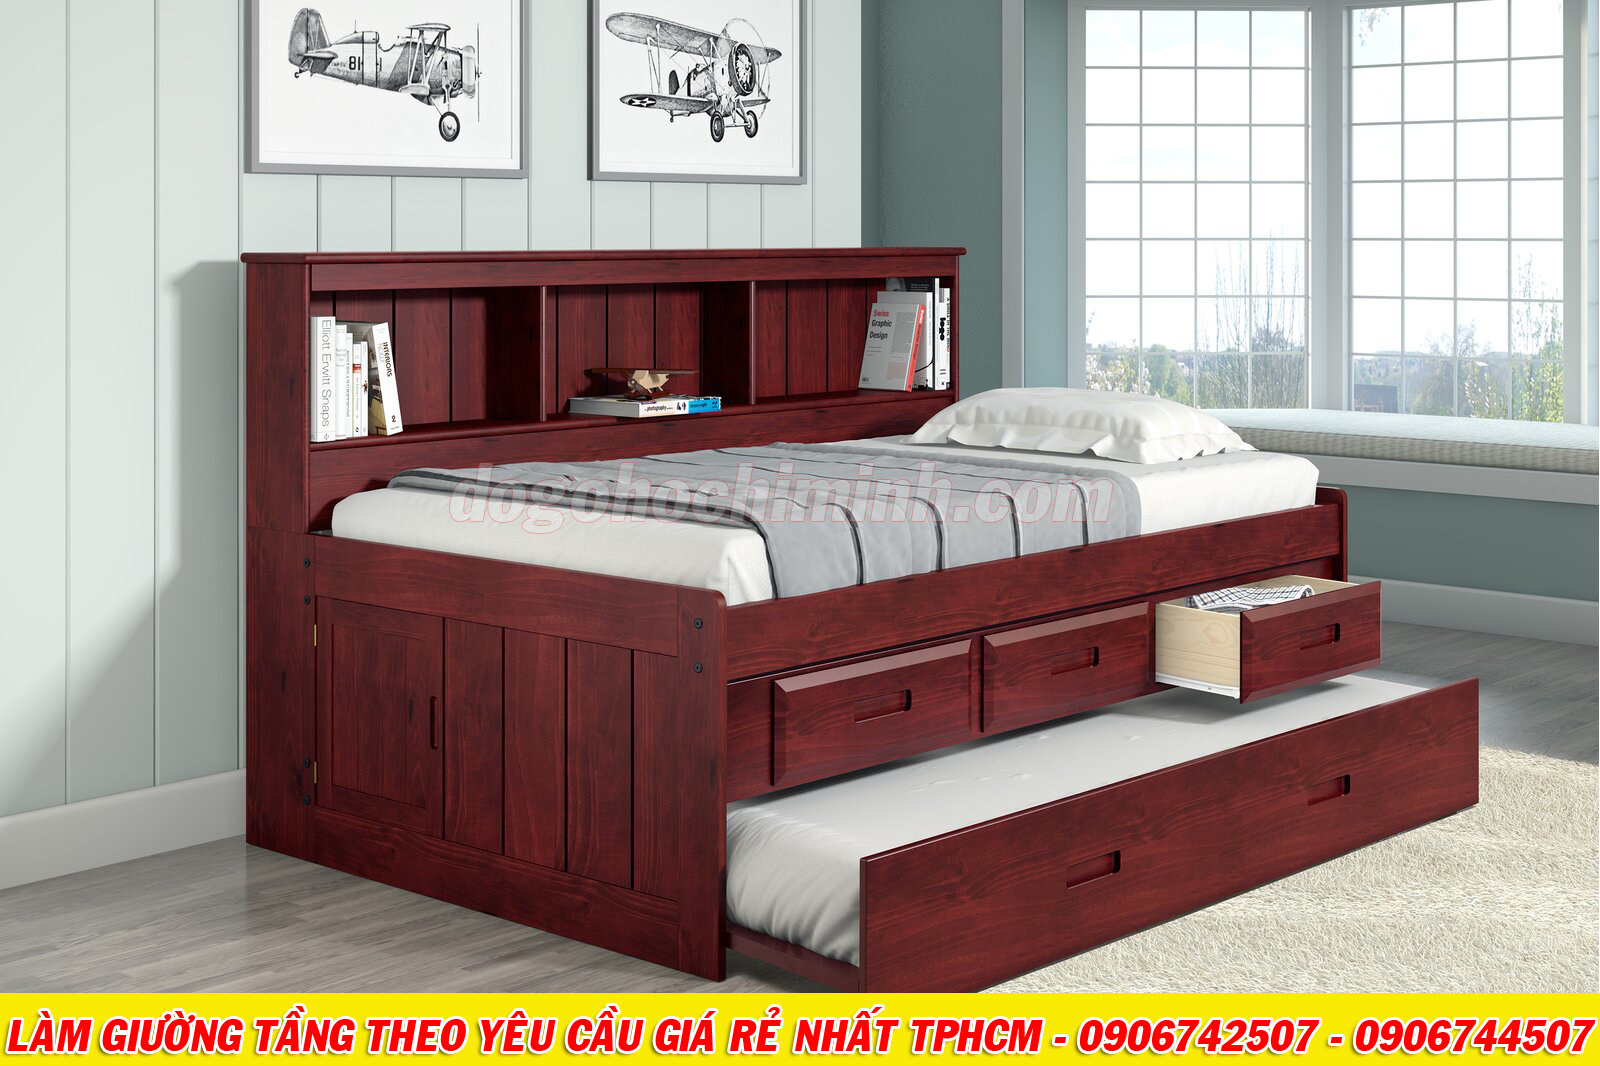 Mẫu giường tầng thiết kế phong cách châu âu mới nhất TPHCM 2020 - P1